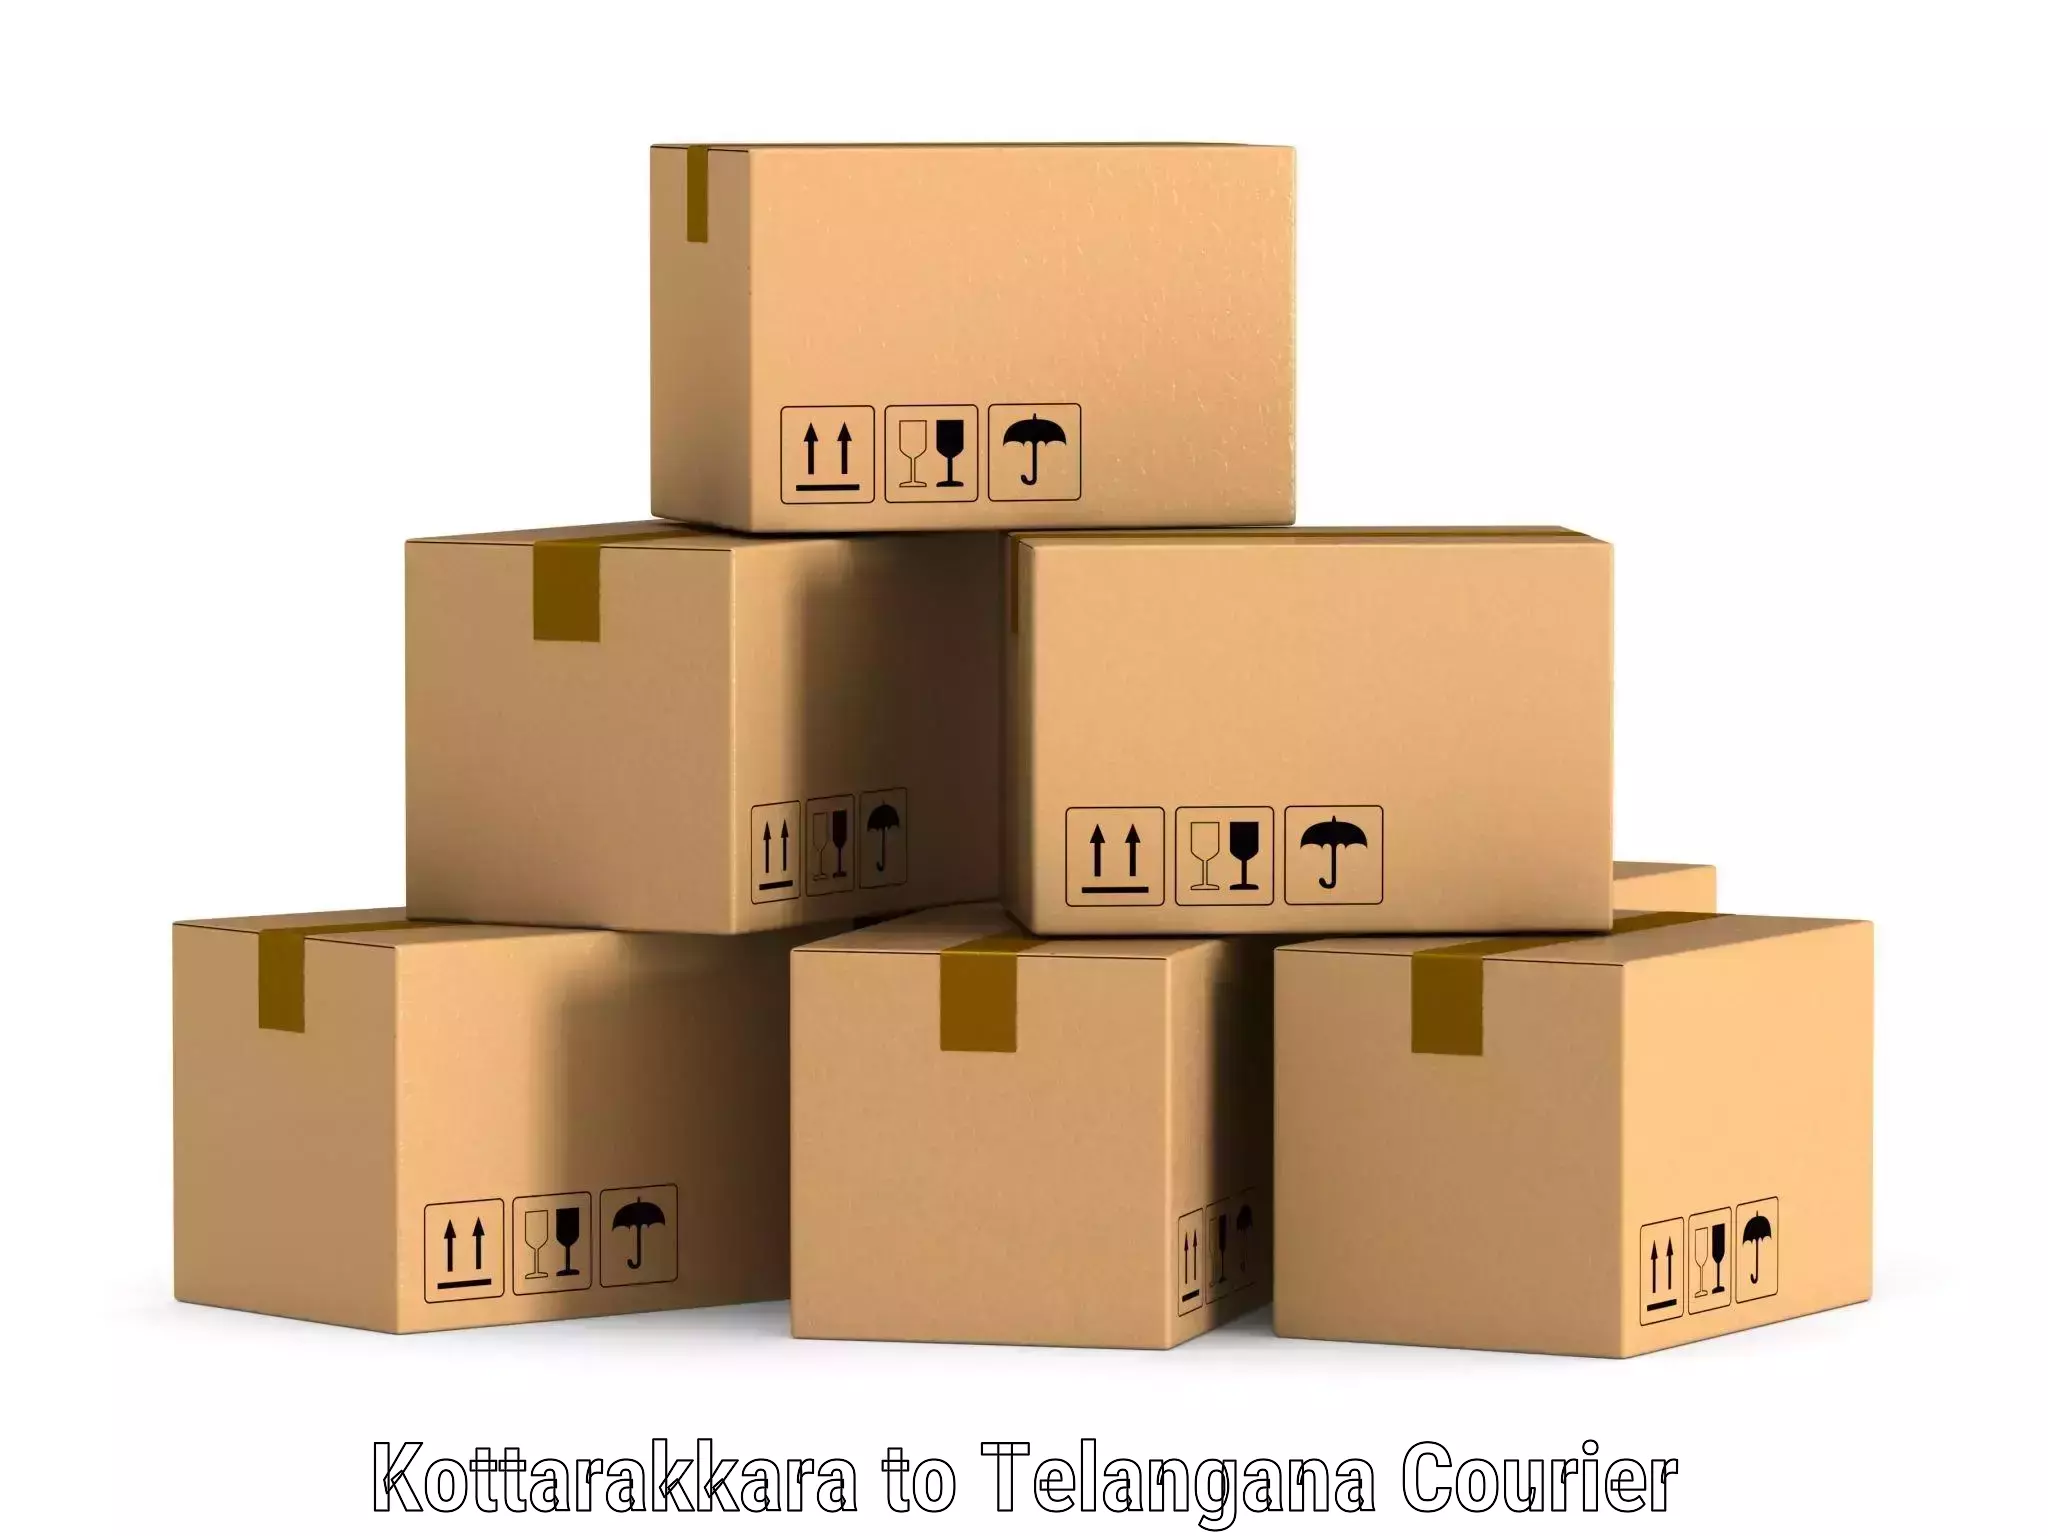 Package delivery network Kottarakkara to Chennur